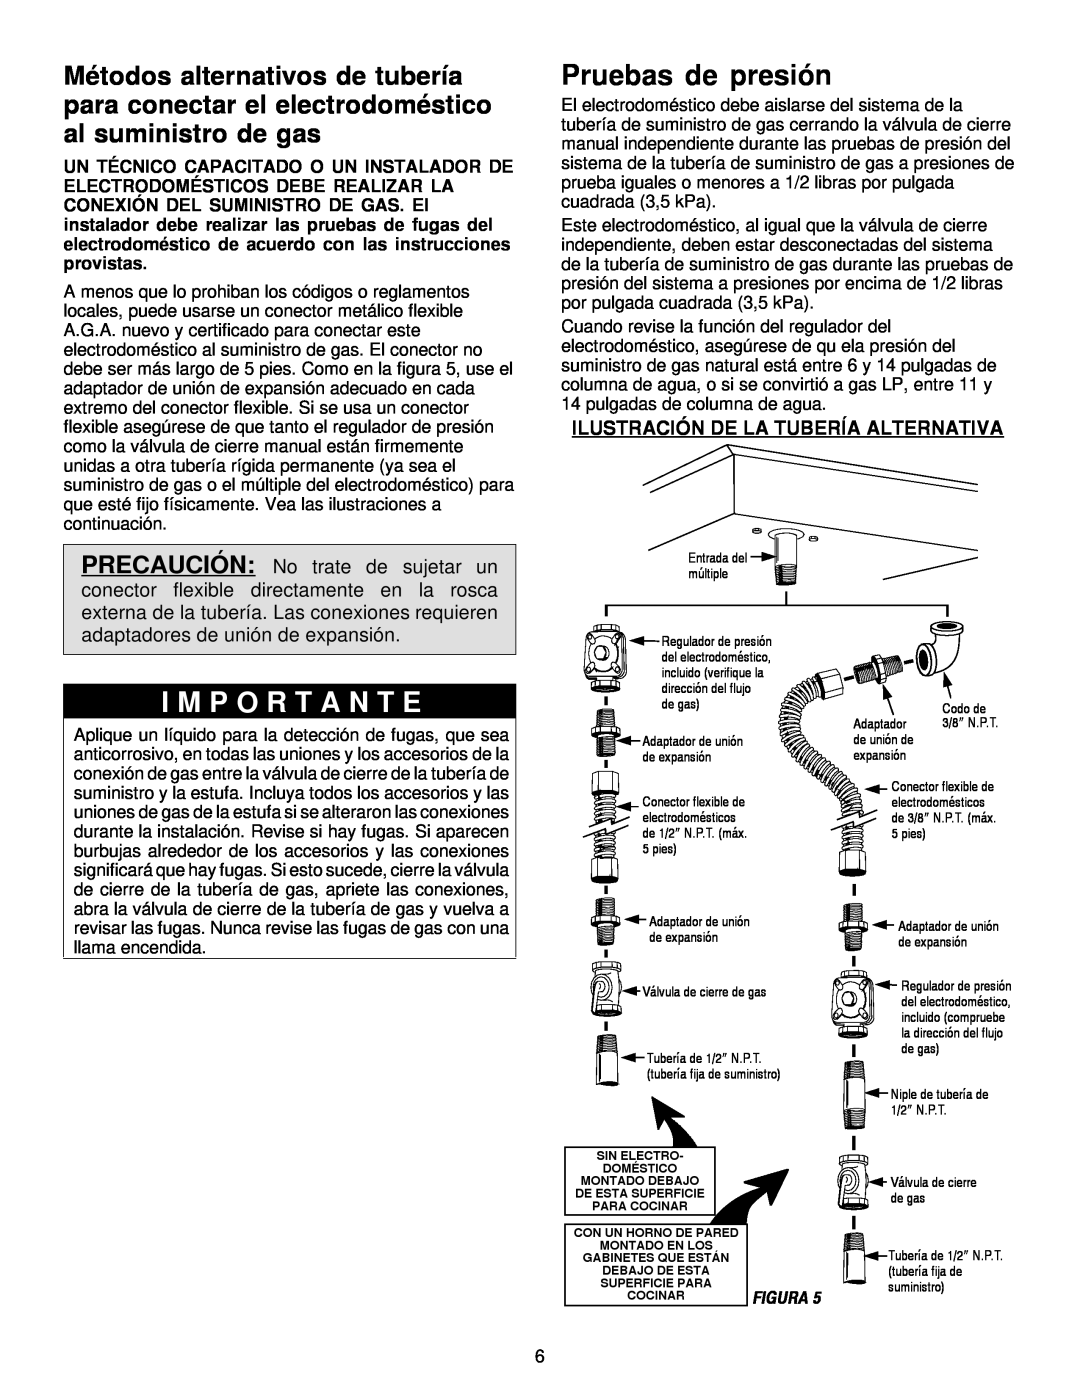 Maytag MGC5536 installation manual Pruebas de presión, Ilustración De La Tubería Alternativa, I M P O R T A N T E 